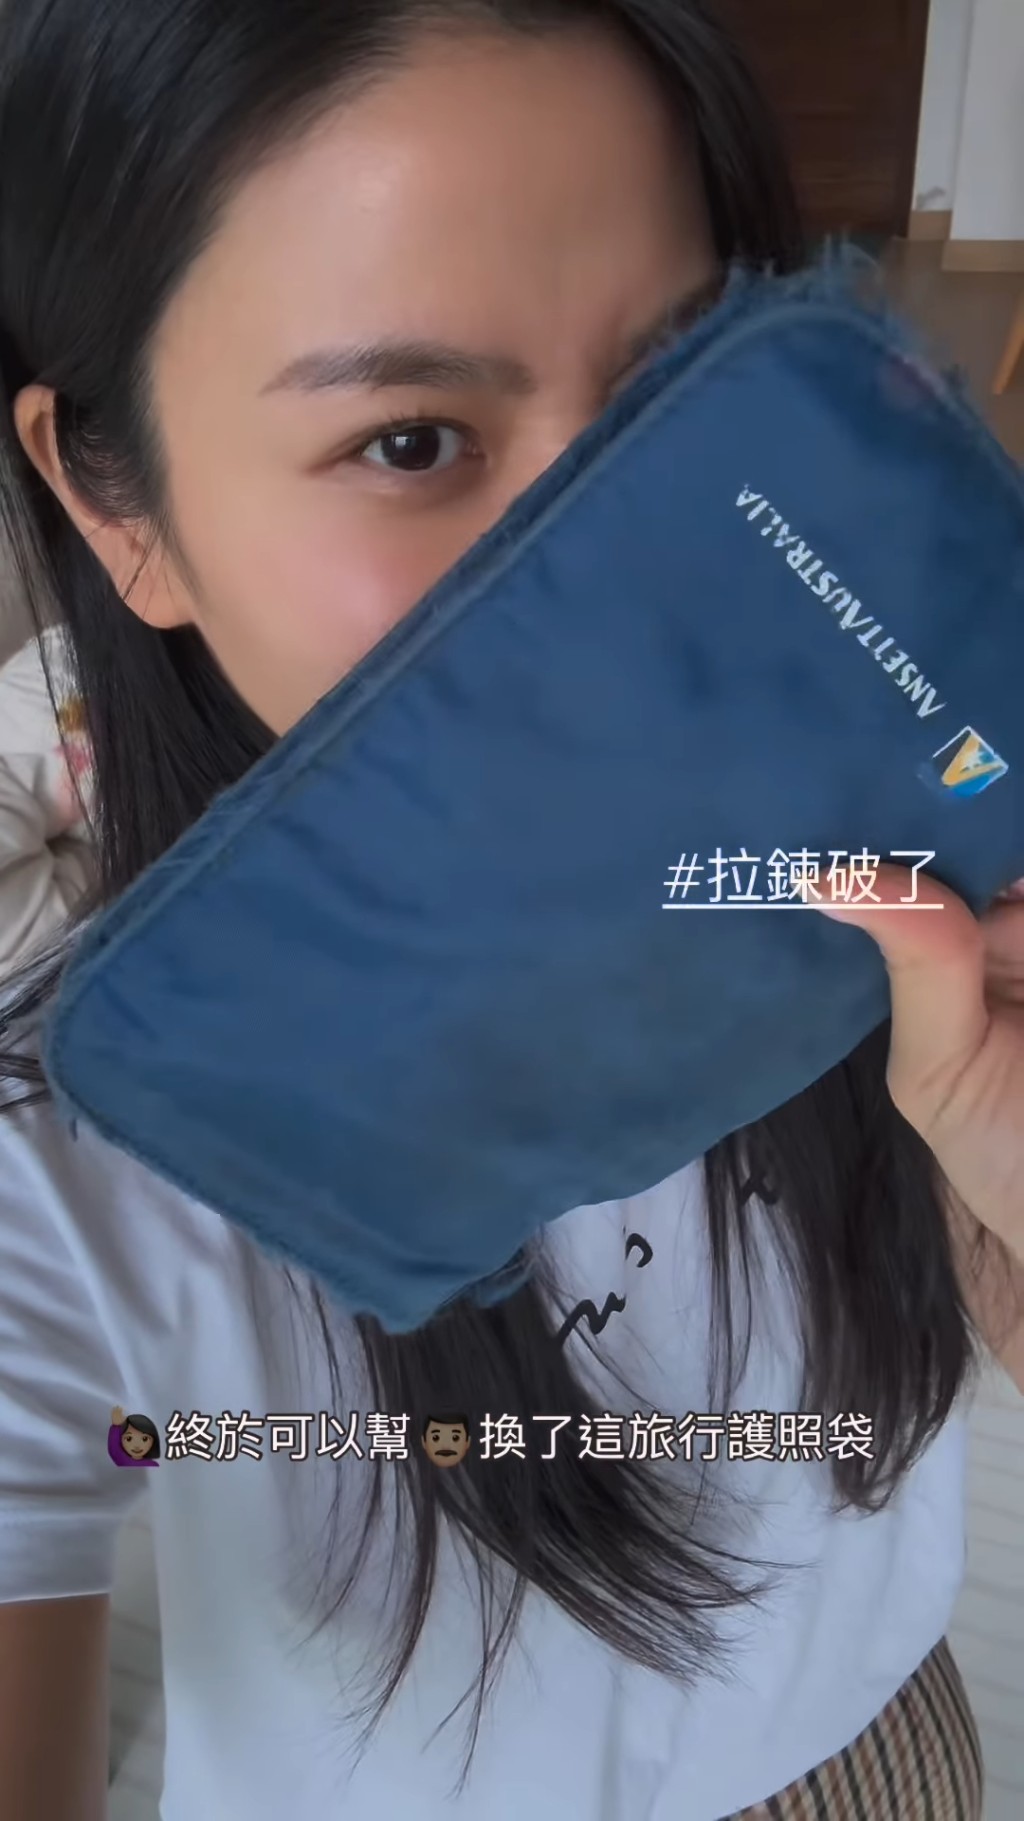 林芊妤昨日（5日）在IG贴出影片，并指早就想换掉老公这个残旧的旅行护照袋。